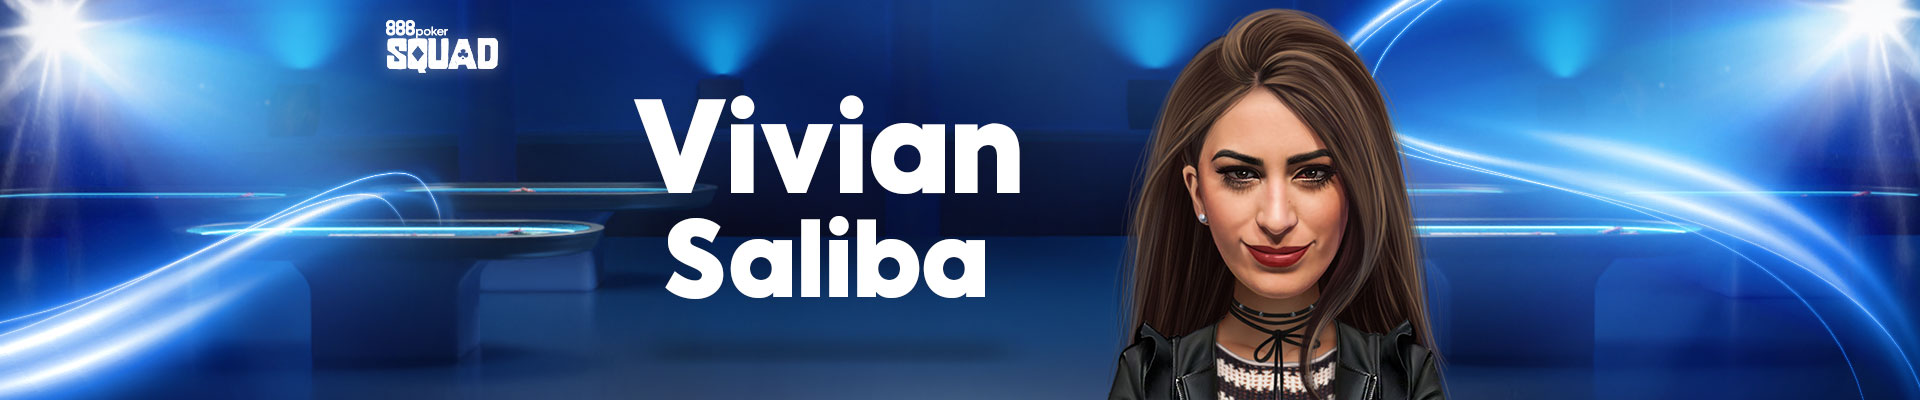 Vivian “Vivi” Saliba